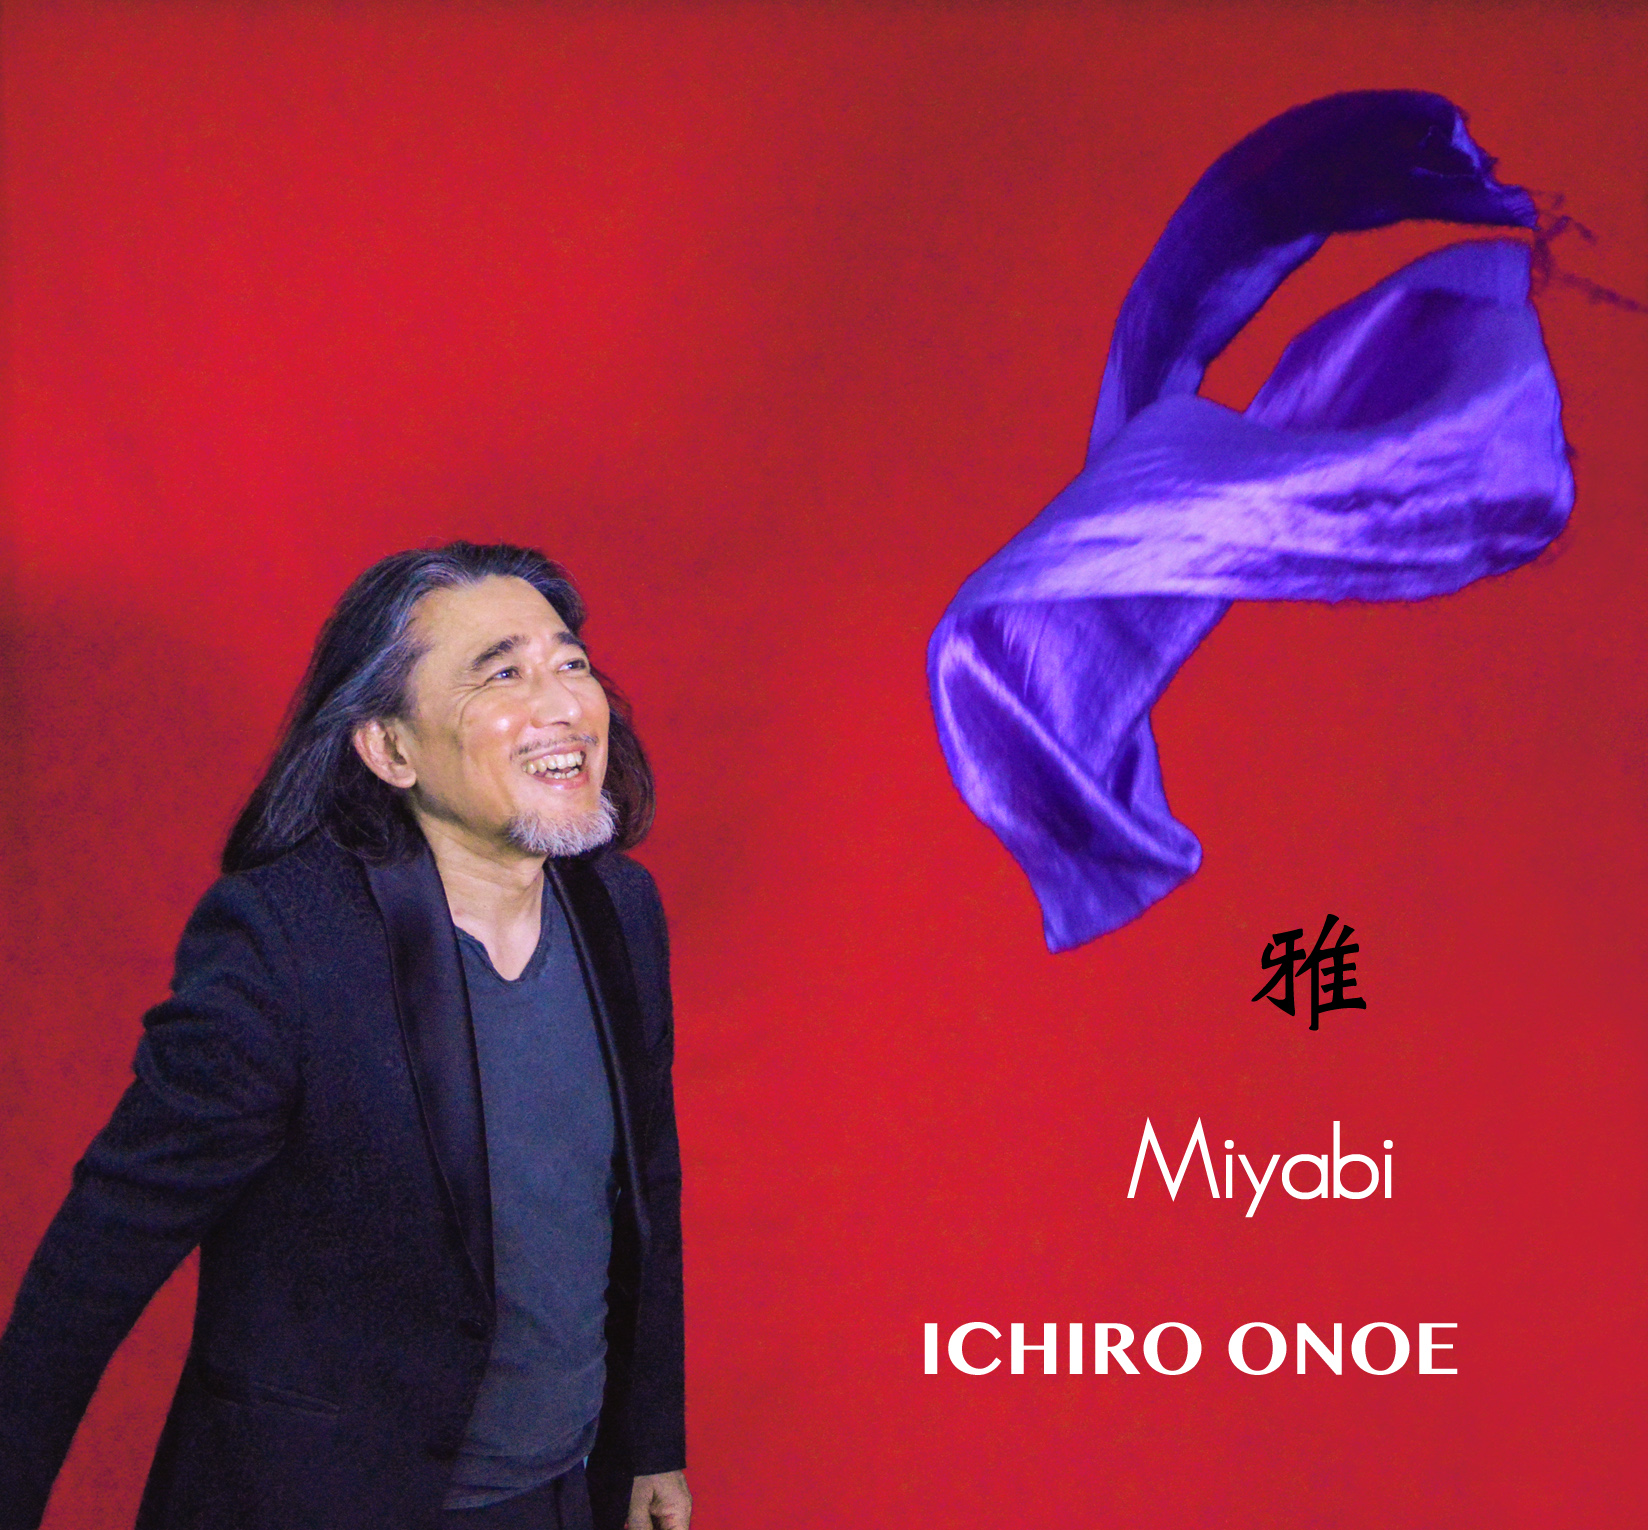 Ichiro Onoe Miyabi